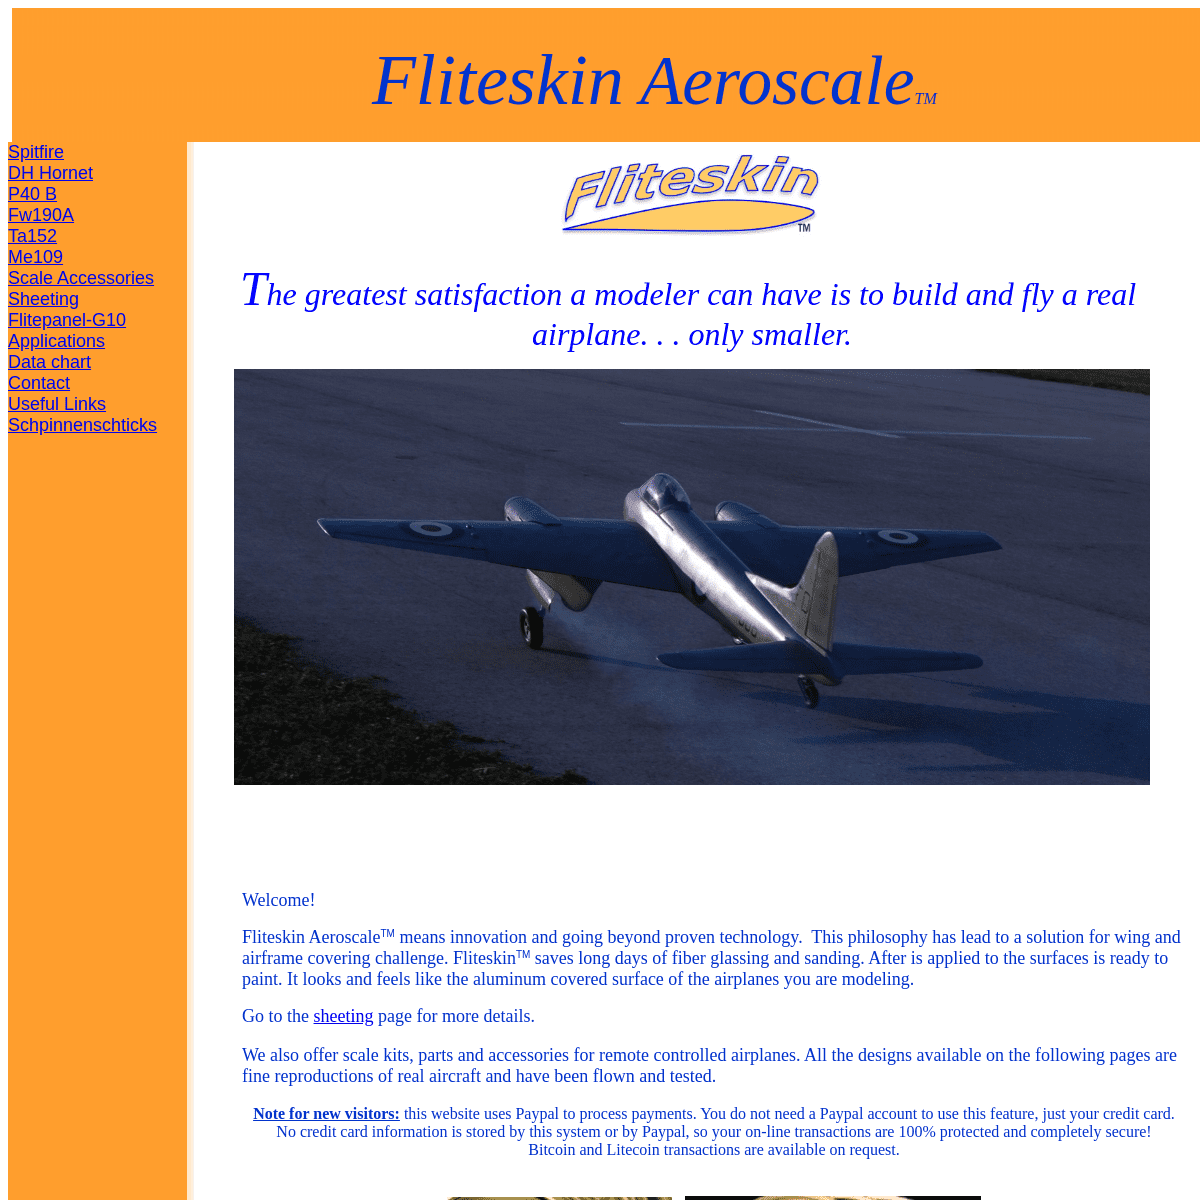 A complete backup of fliteskin.com